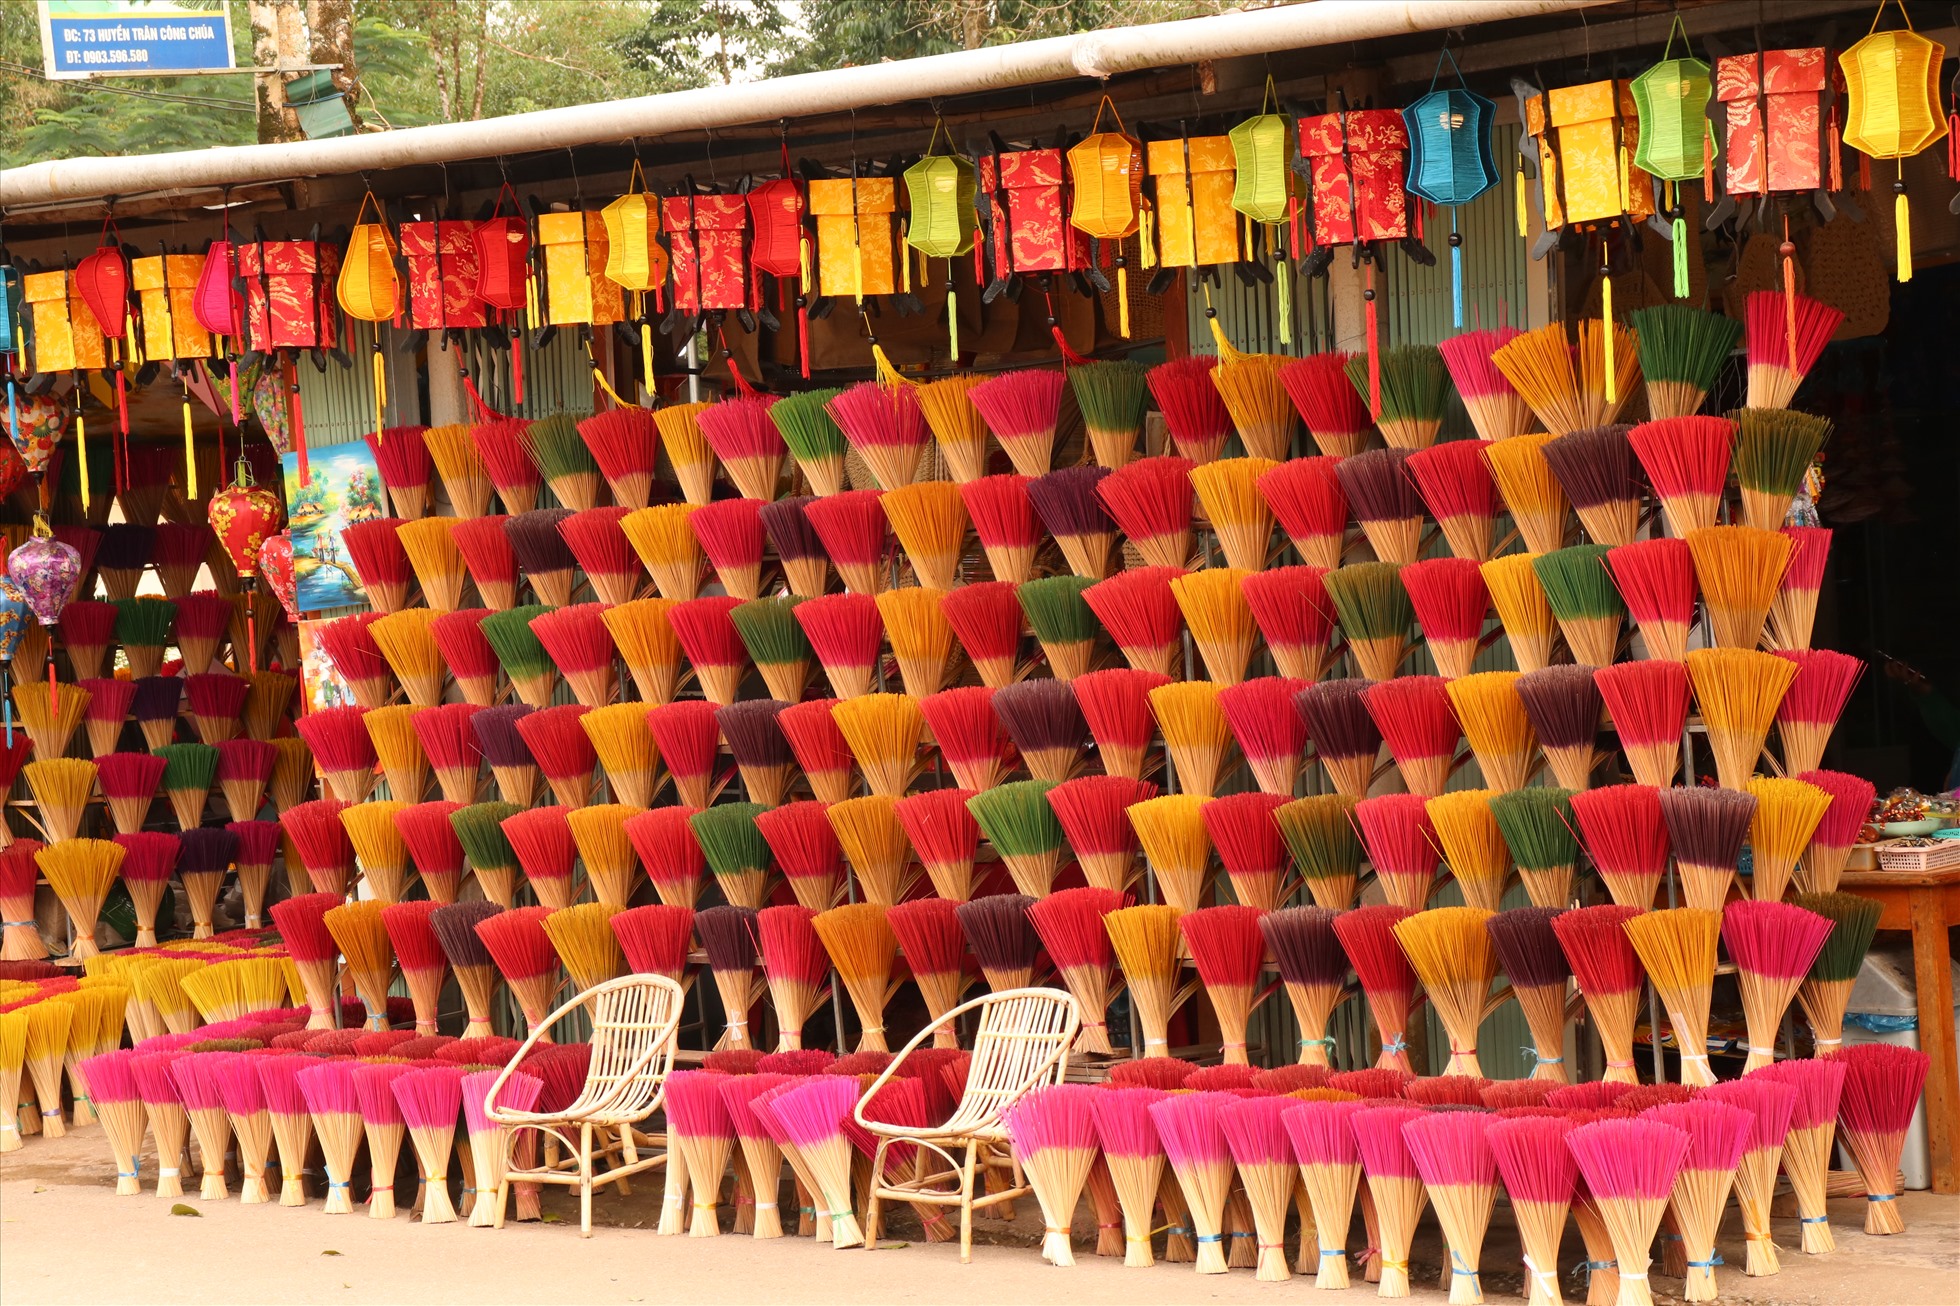 Nằm cách trung tâm thành phố Huế khoảng 7km, làng hương Thuỷ Xuân là nơi lưu giữ nghề làm hương trầm truyền thống hàng trăm năm qua. Bên cạnh đó, ngôi làng này còn là điểm tham quan du lịch nổi tiếng thu hút đông đảo khách du lịch mỗi dịp tết.